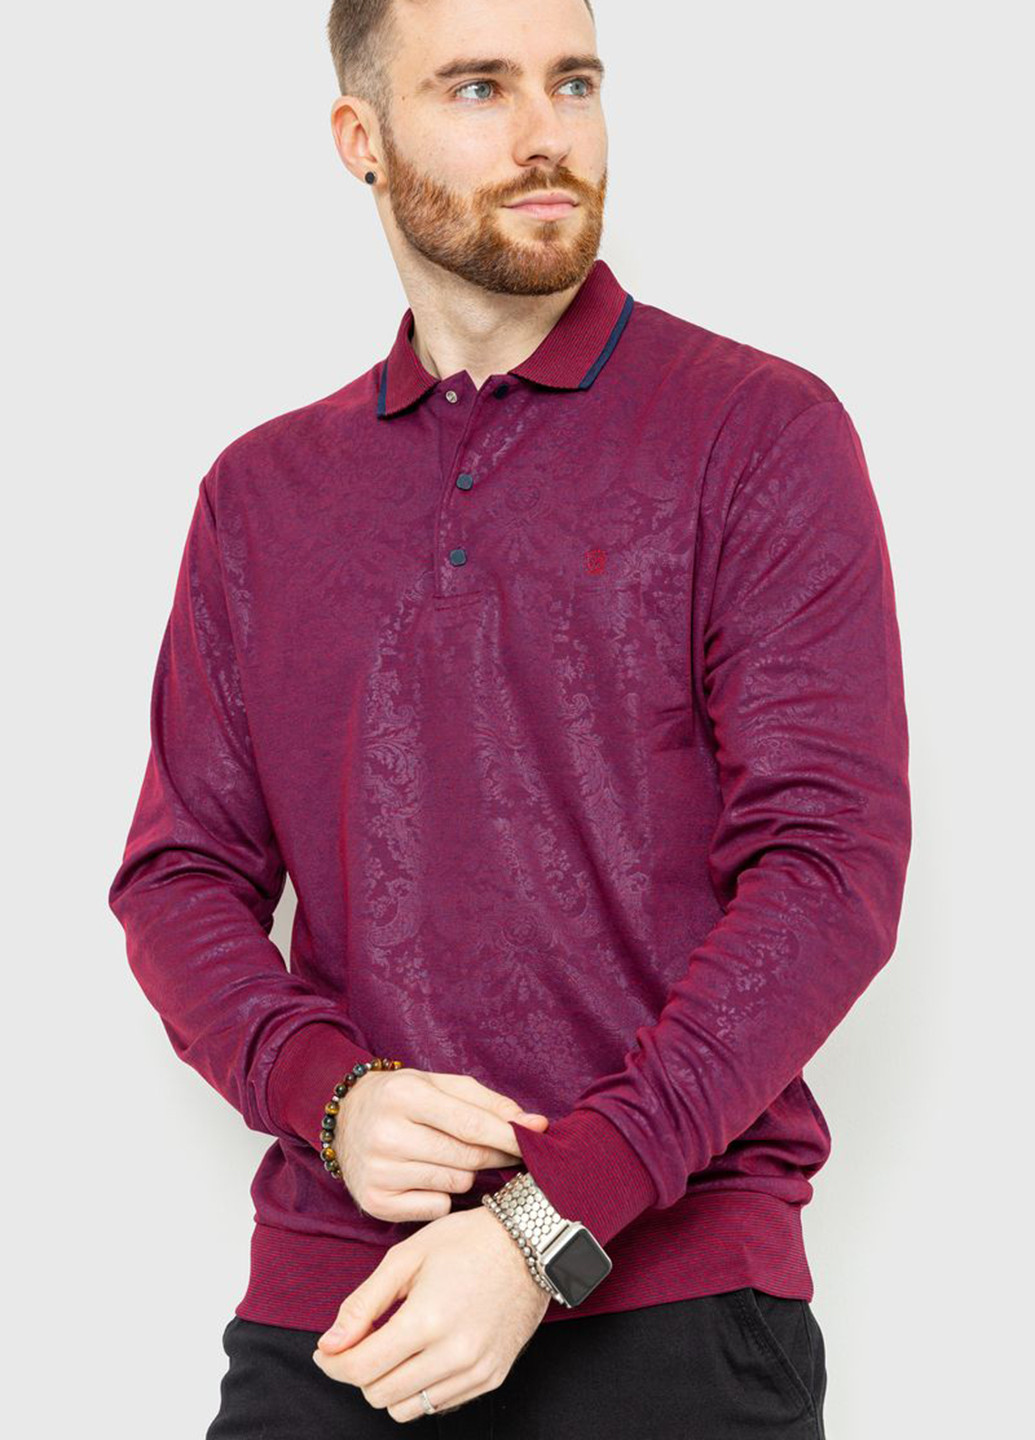 Сливовая футболка-поло для мужчин Ager с абстрактным узором